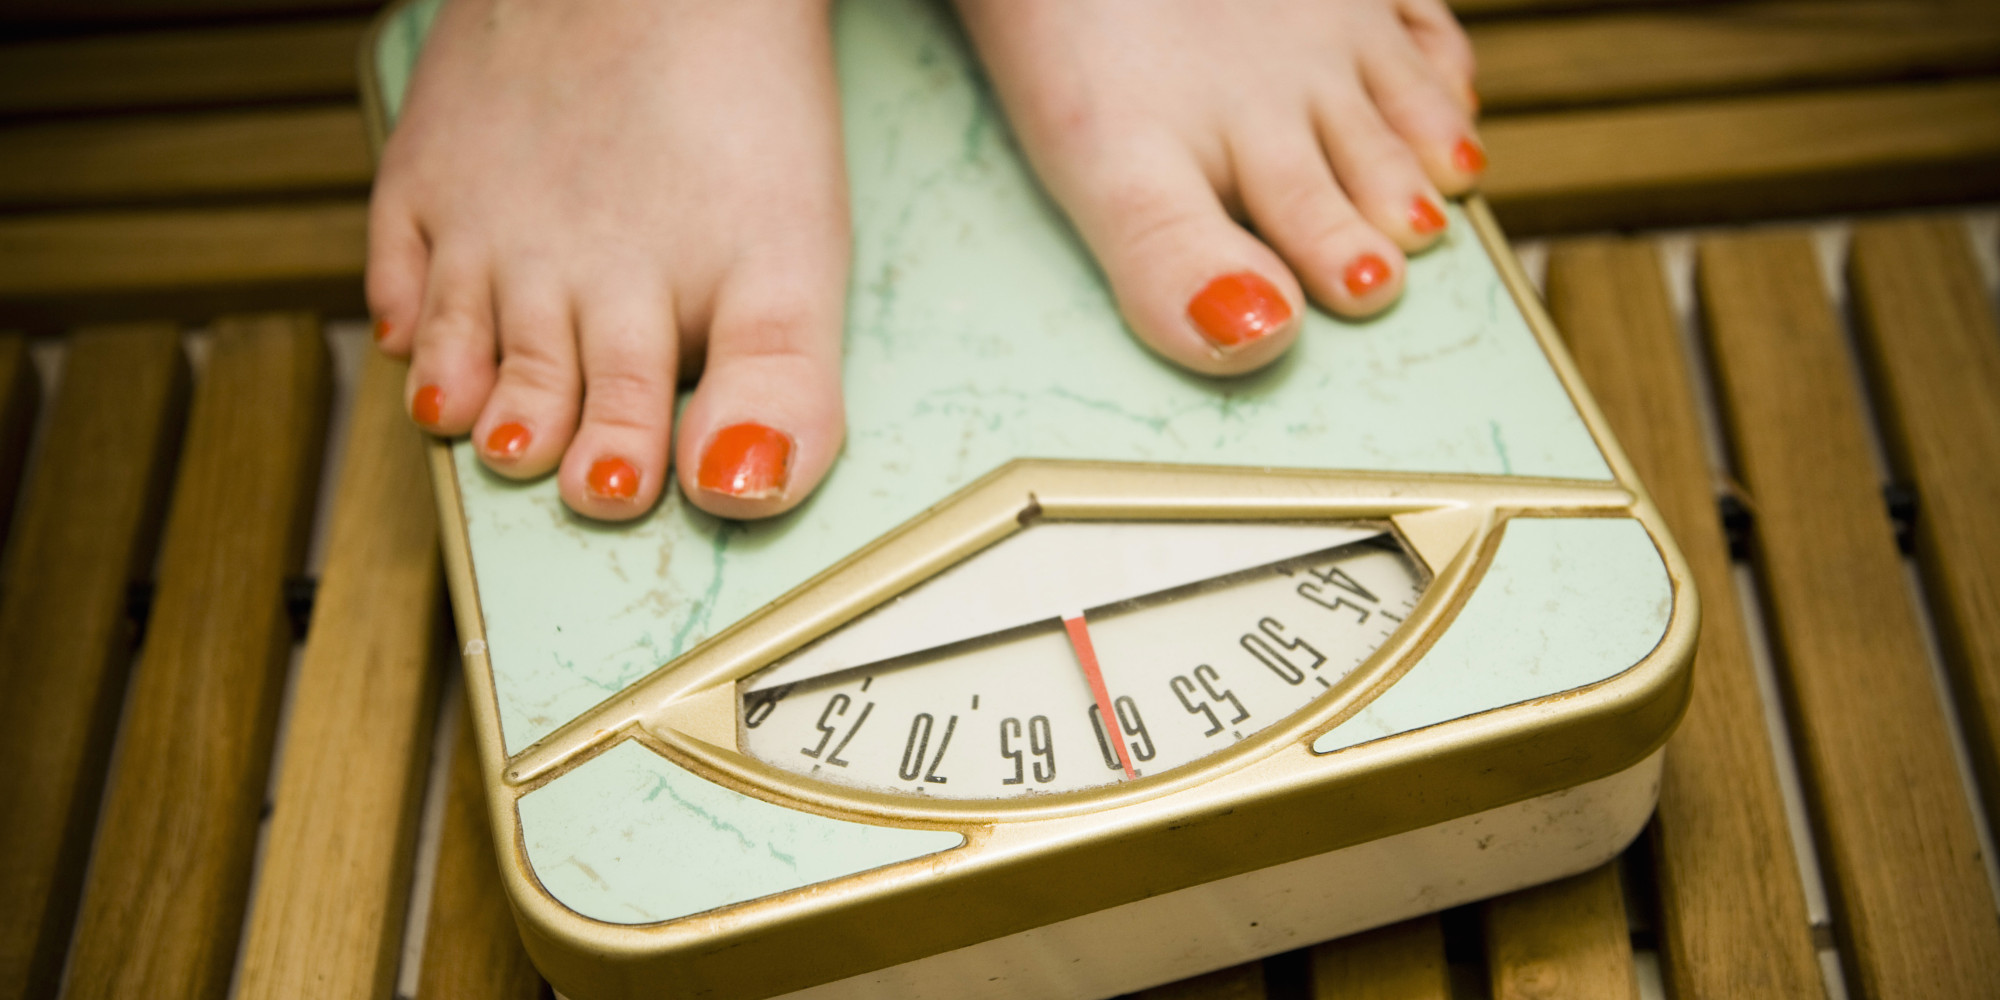 Eating Disorders Awareness Week  Cosmopolitan Launches